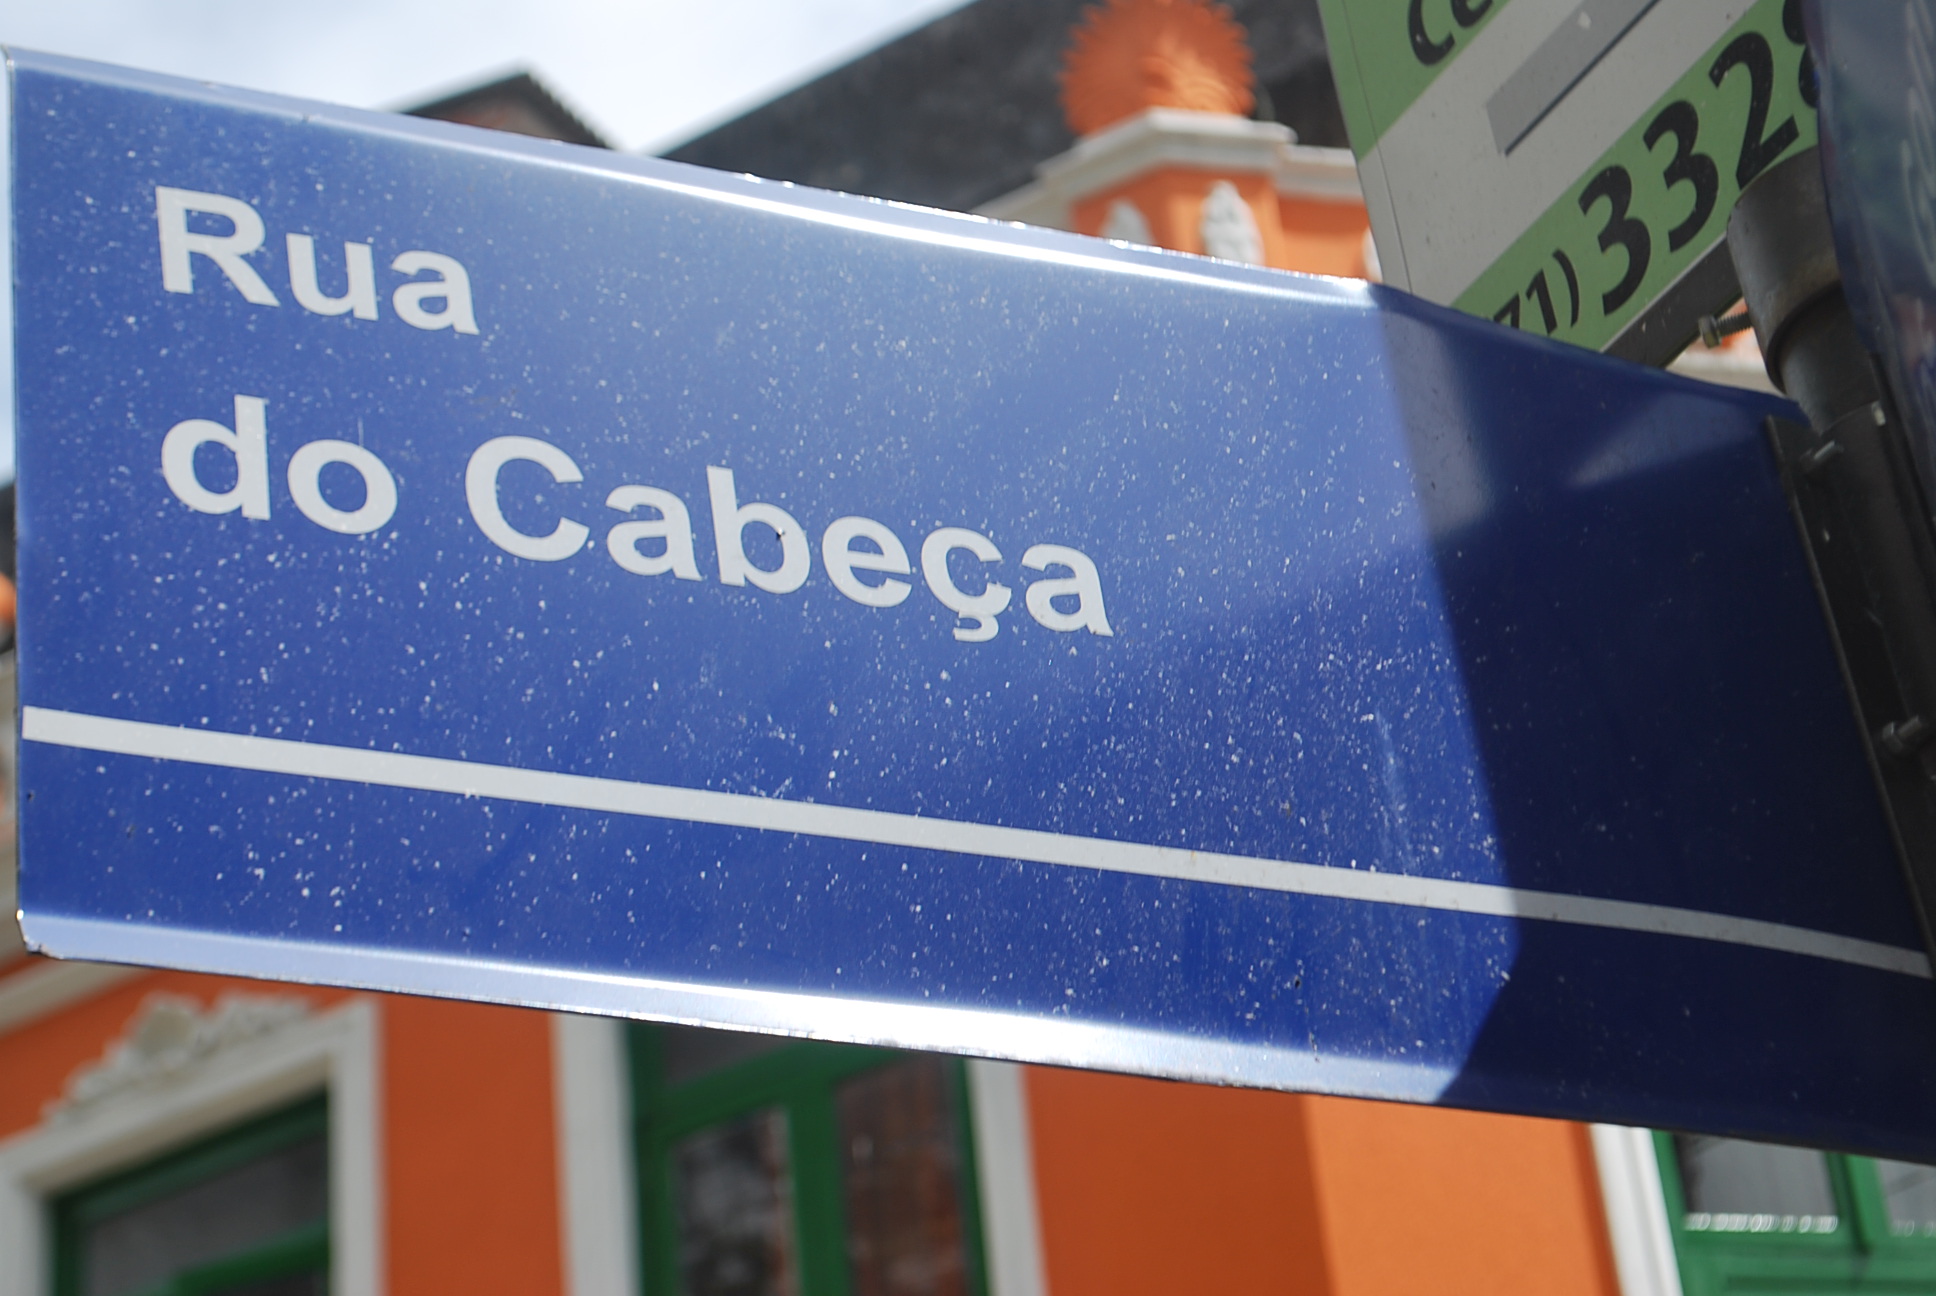 Conheça nomes curiosos de ruas e bairros de Salvador - Notícias - R7 Bahia